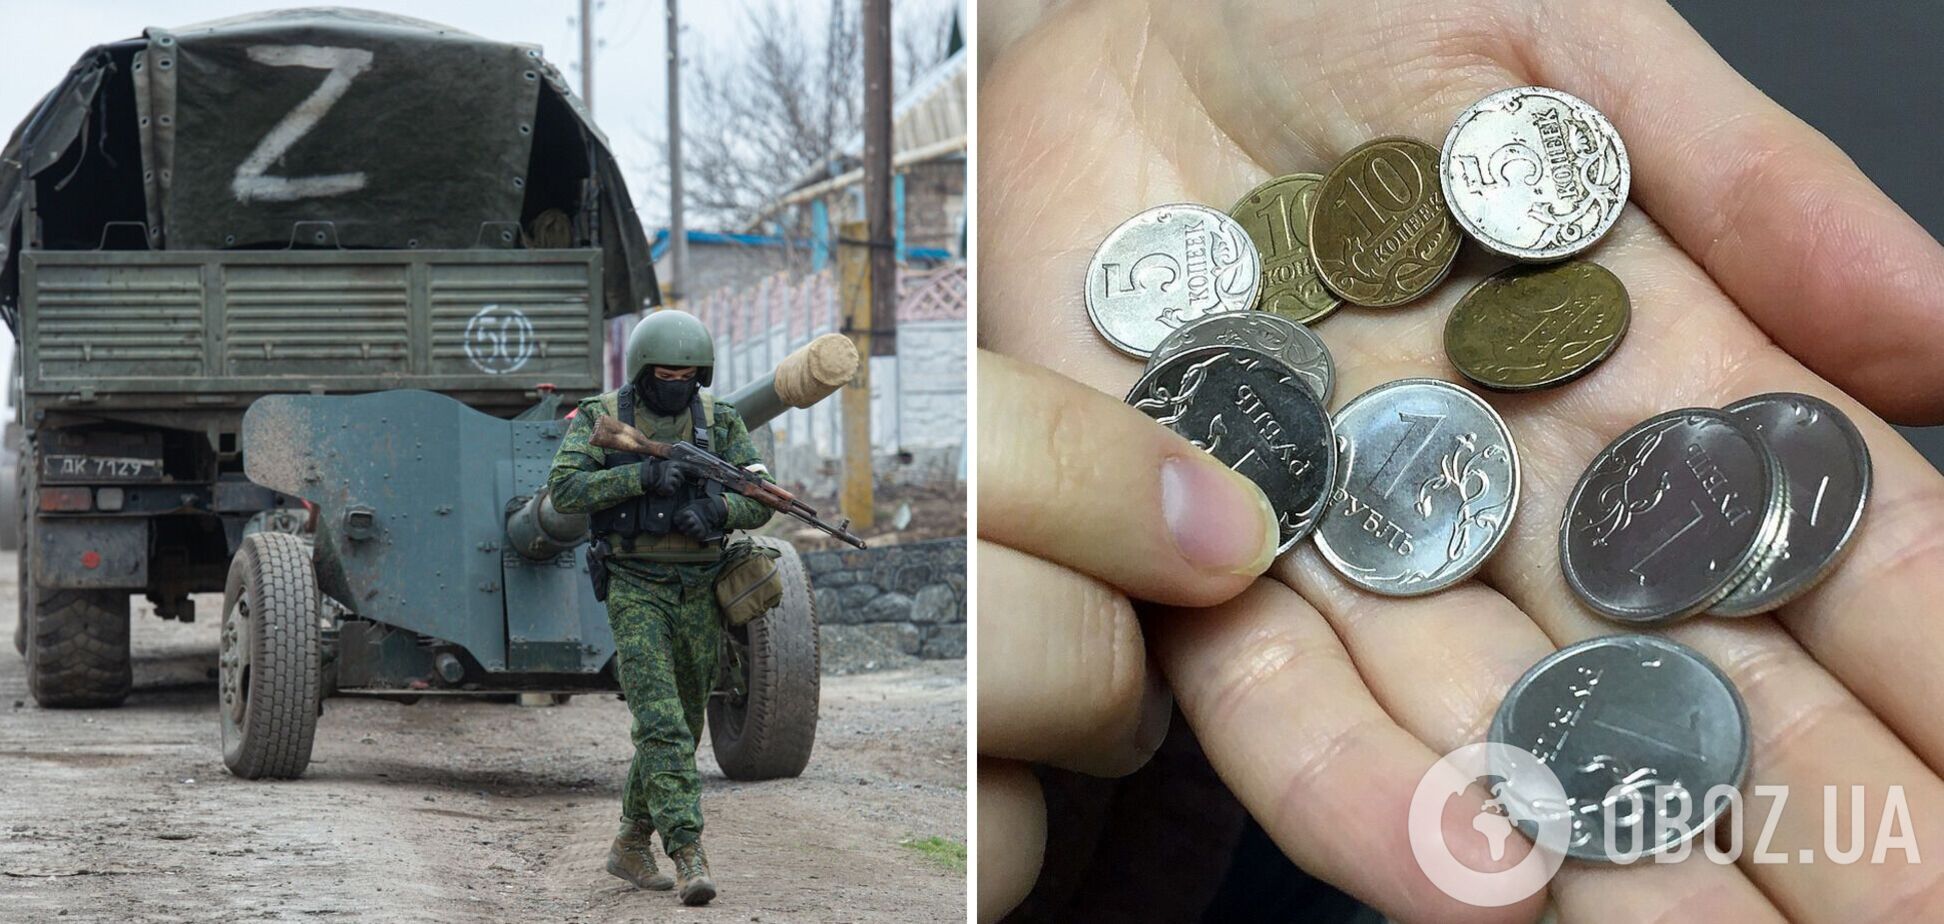 'Нас обманывают': оккупант пожаловался жене, что его 'кинули' с выплатами за участие в войне против Украины. Перехват